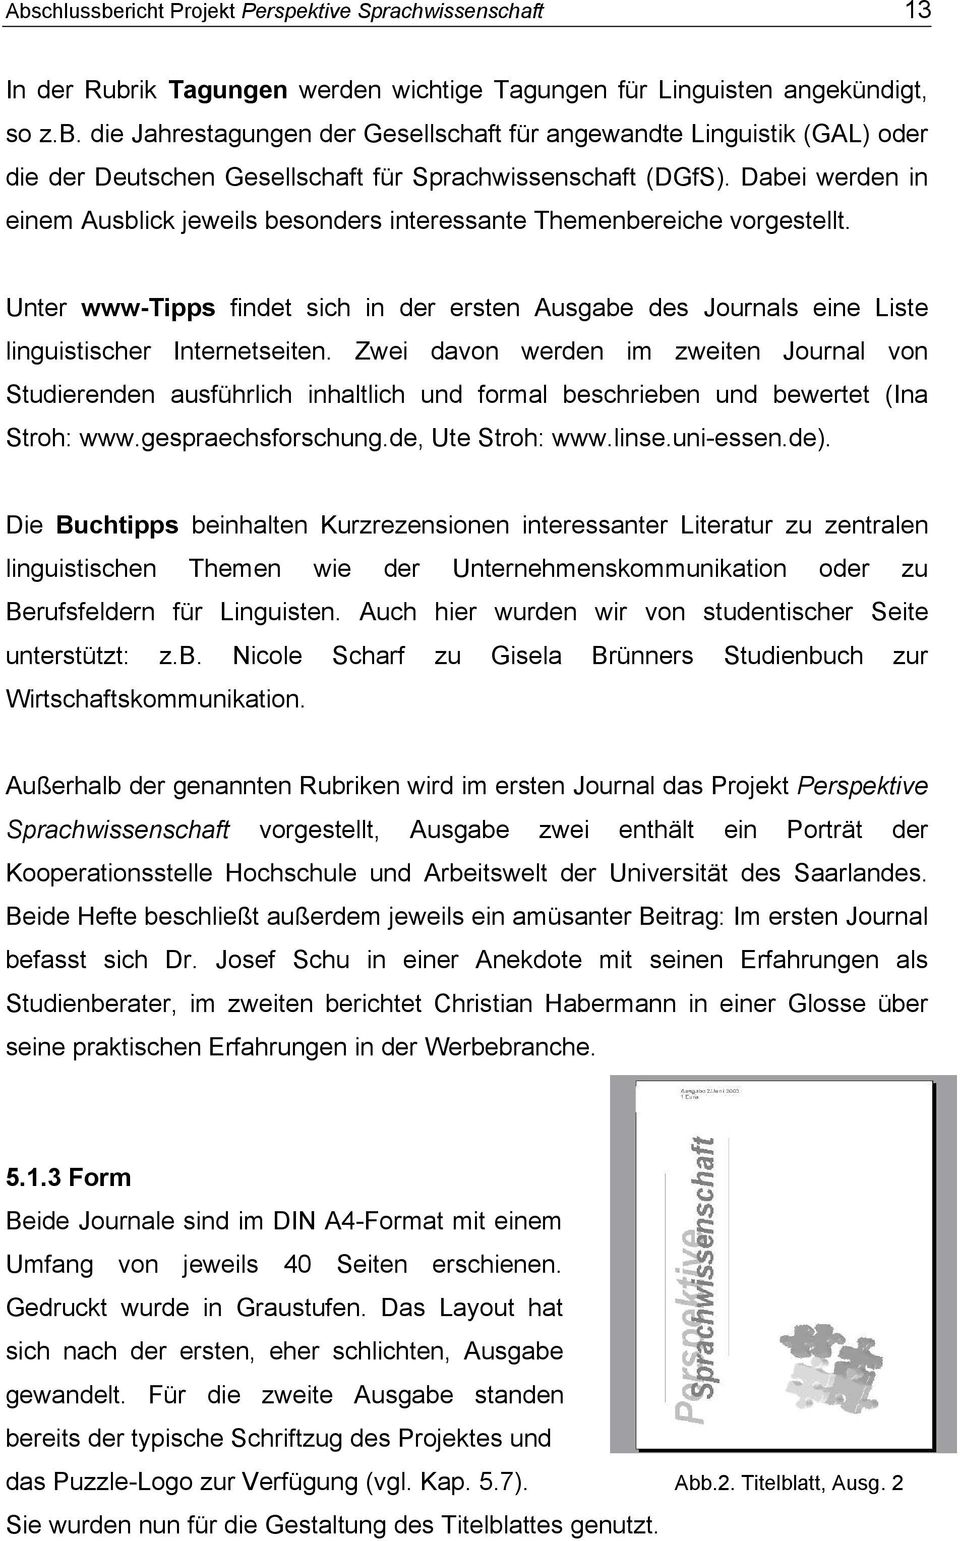 Zwei davon werden im zweiten Journal von Studierenden ausführlich inhaltlich und formal beschrieben und bewertet (Ina Stroh: www.gespraechsforschung.de, Ute Stroh: www.linse.uni-essen.de).